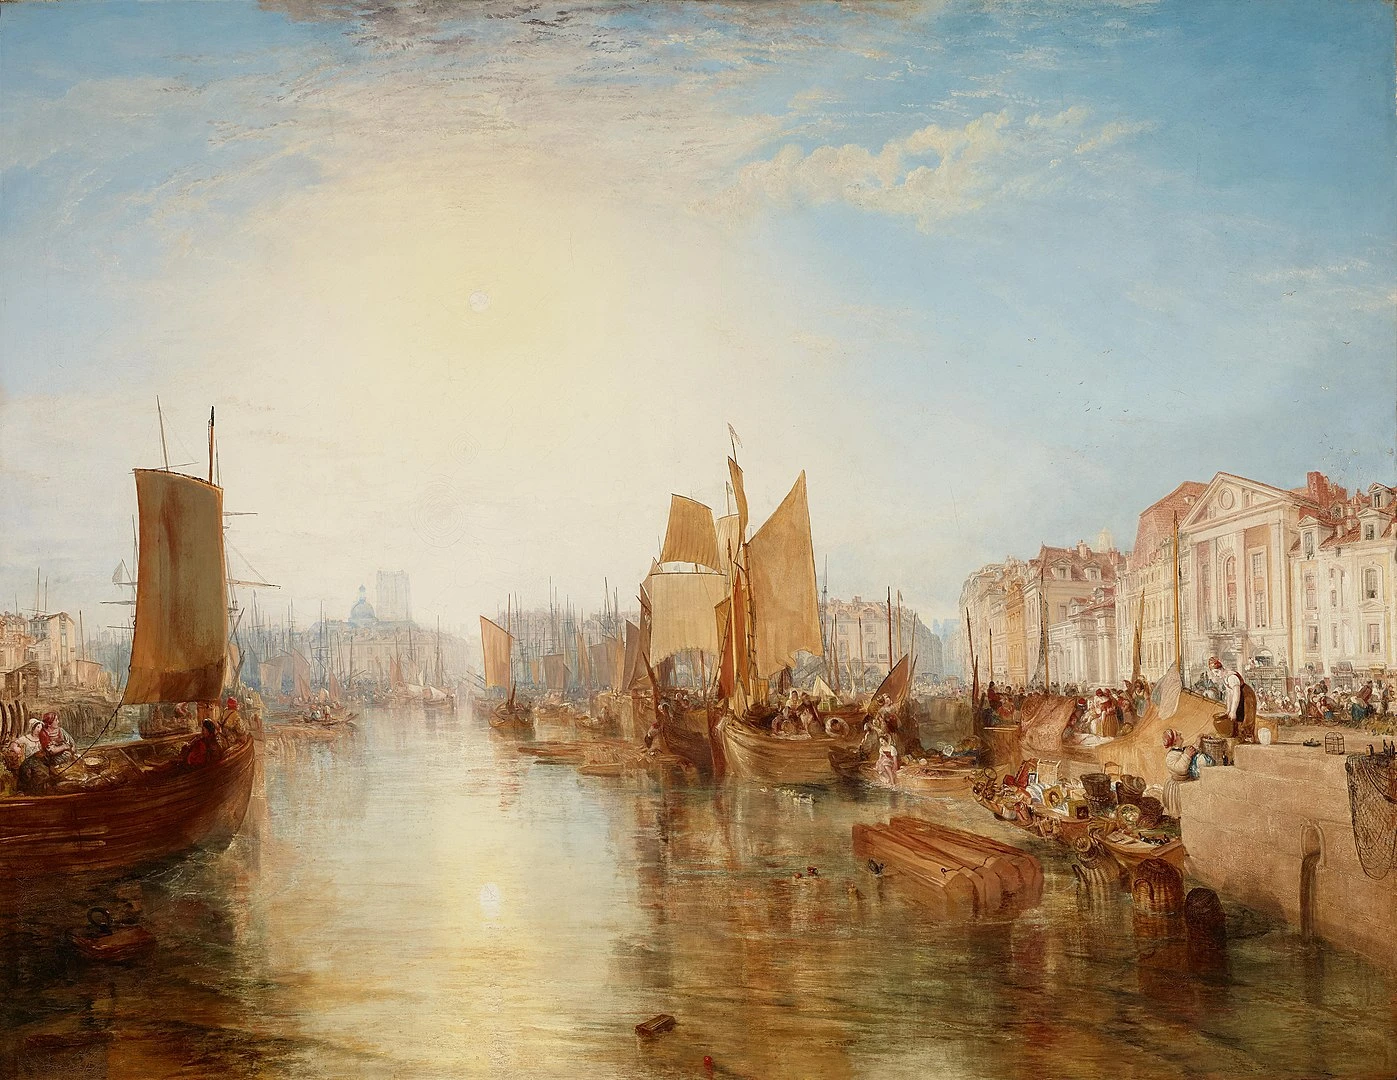 La canelle et le riz sont arrivés de loin dans les ports normands du XIXe siècle. Ici, Le port de Dieppe en Normandie (Seine-Maritine) peint vers 1826 par William Turner (1775-1851) 